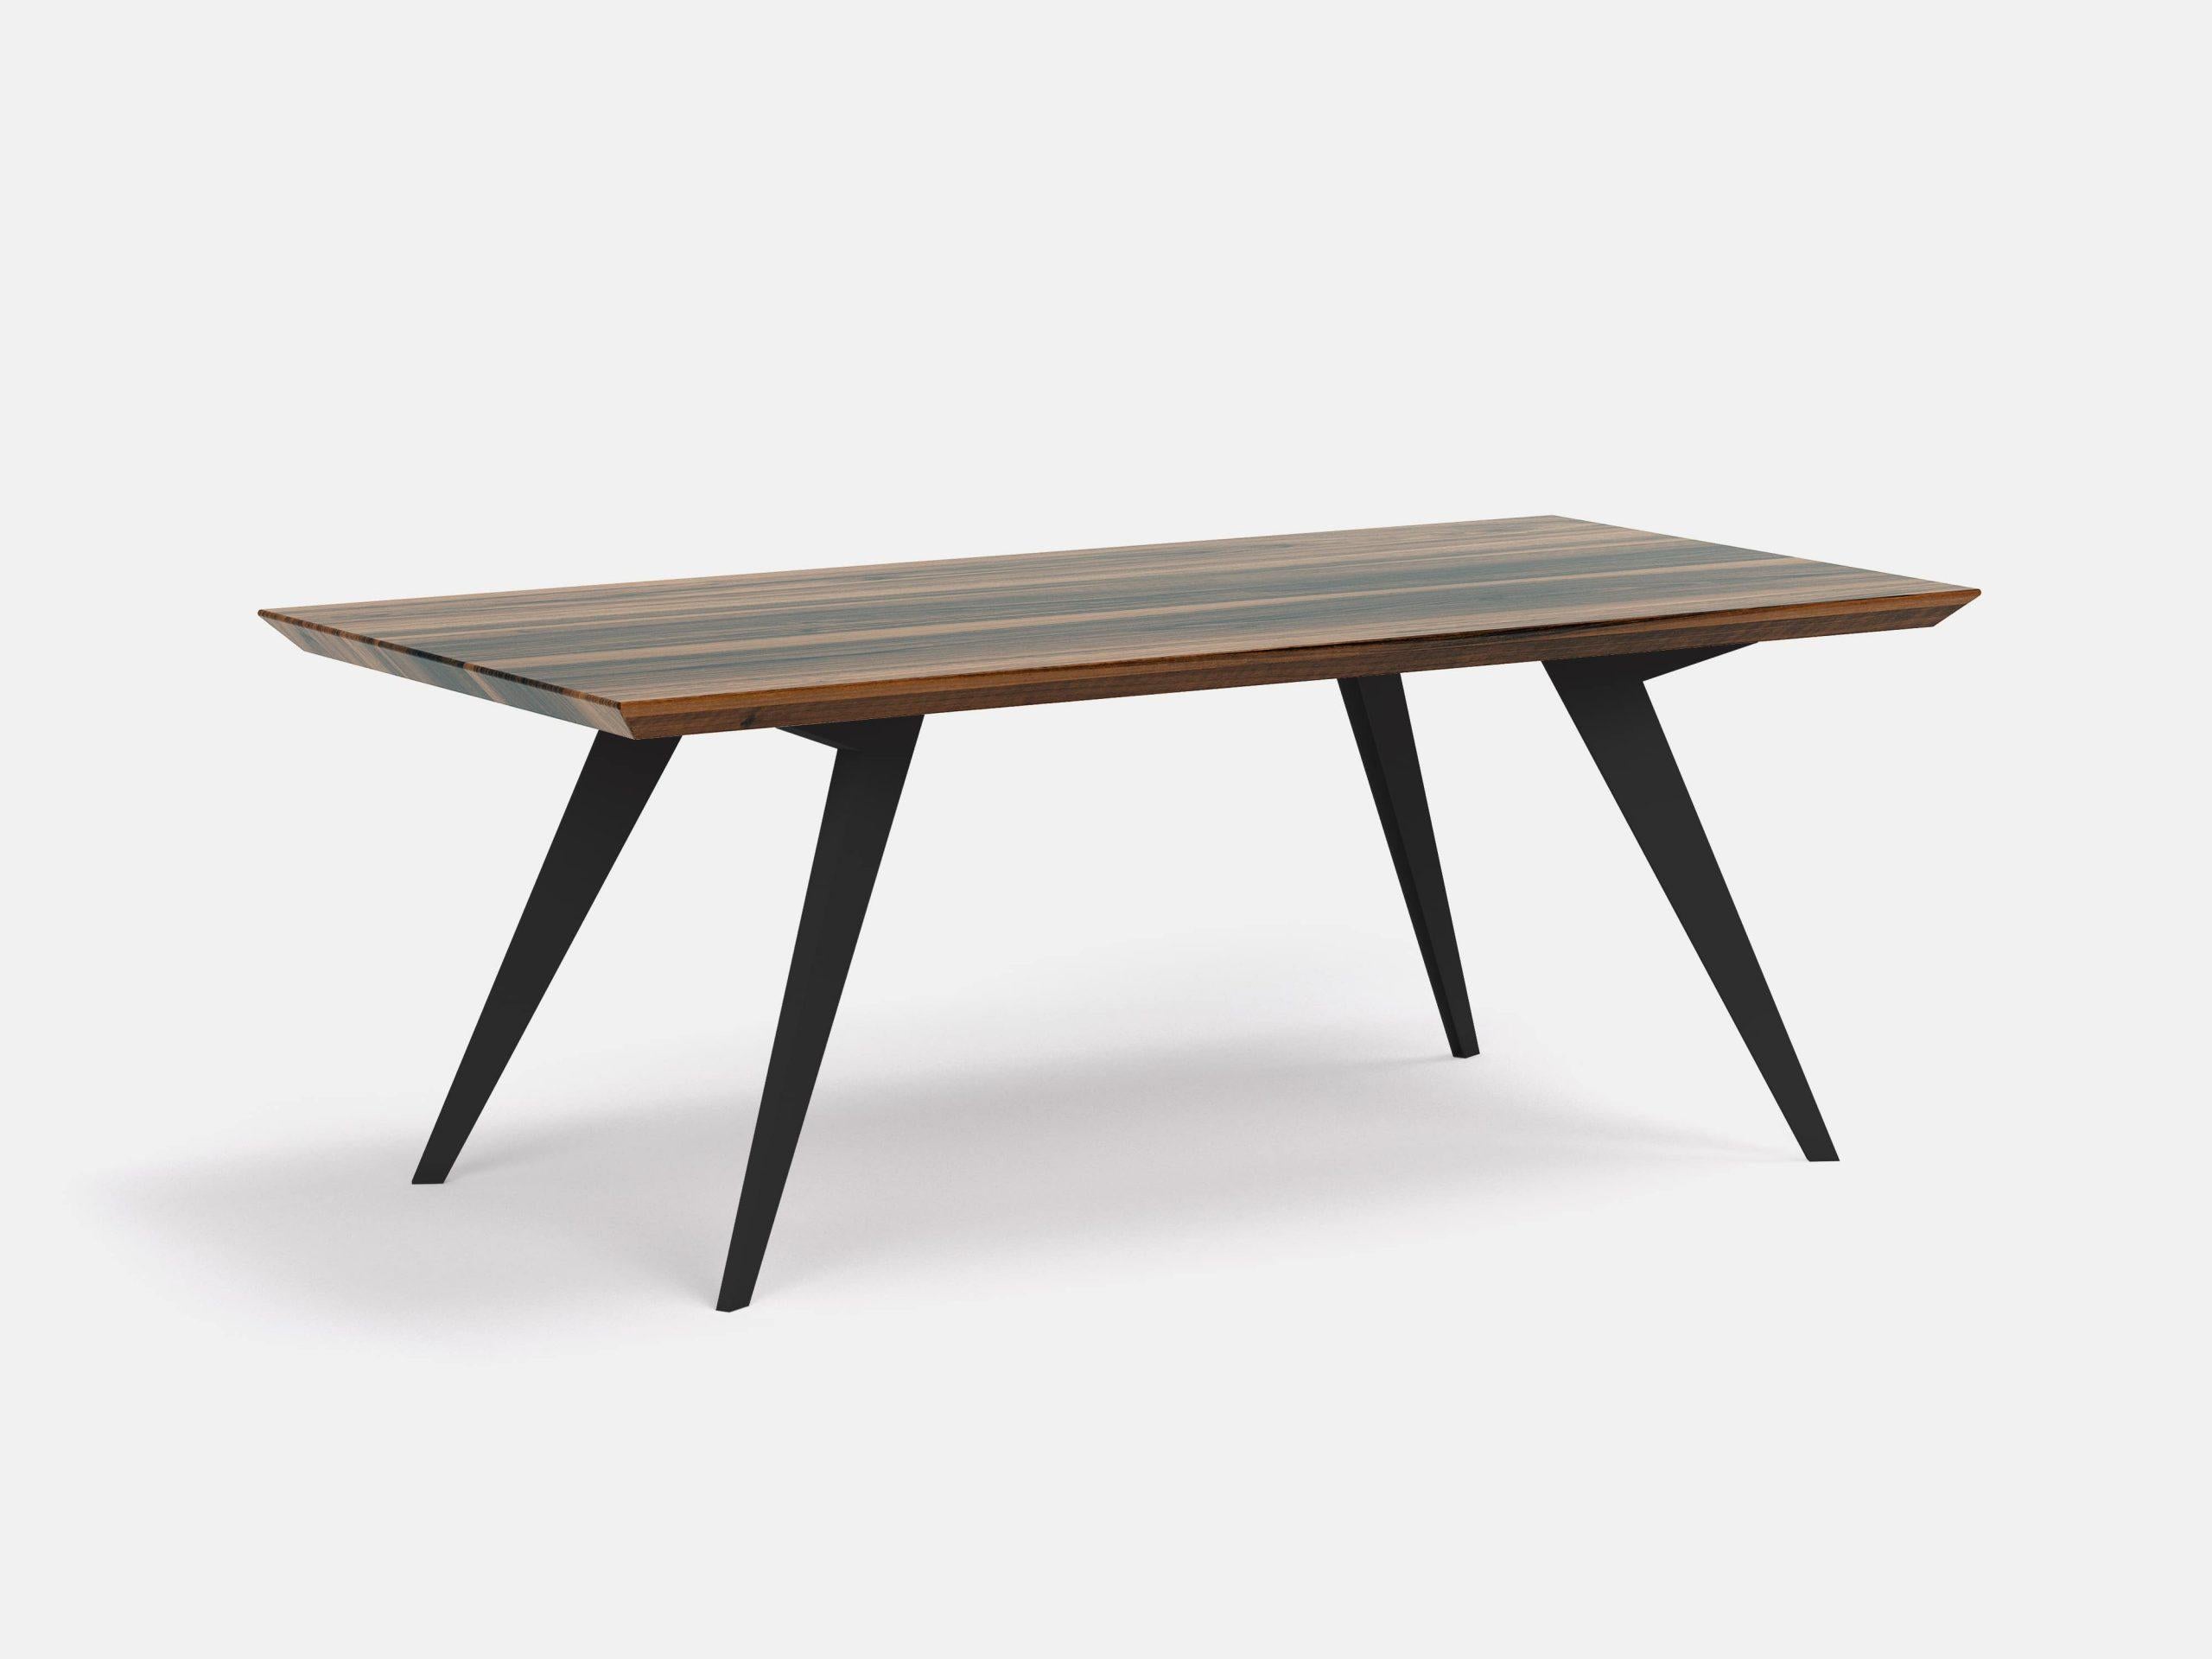 Table de salle à manger minimaliste 250 en noyer et acier 
Dimensions : L 250 x D 100 x H 75 cm
MATERIAL : Noyer américain 100% bois massif, pieds en acier

La table Roly-Poly est la preuve que le design permet de créer de la légèreté et de la